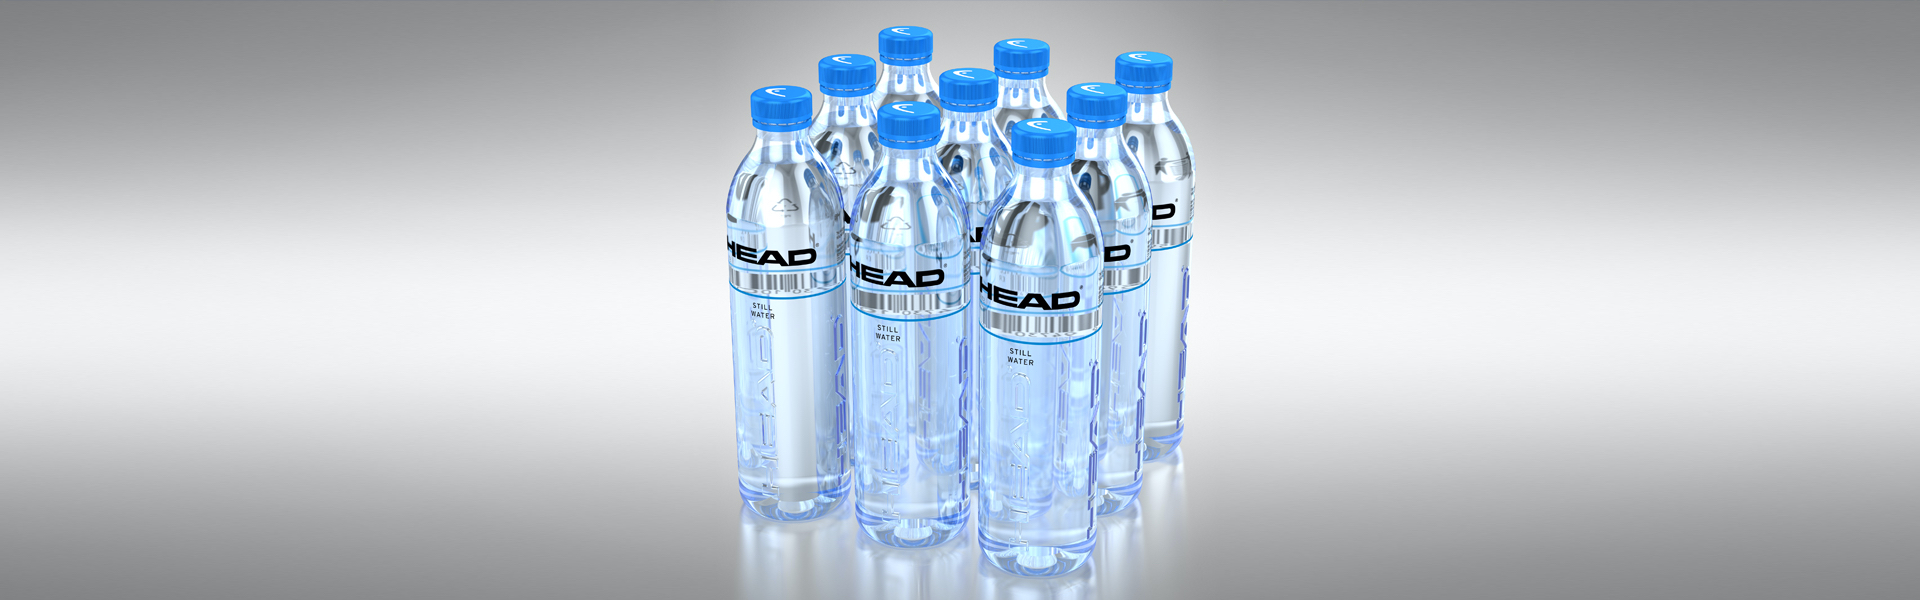 HEAD Drinks water bottles